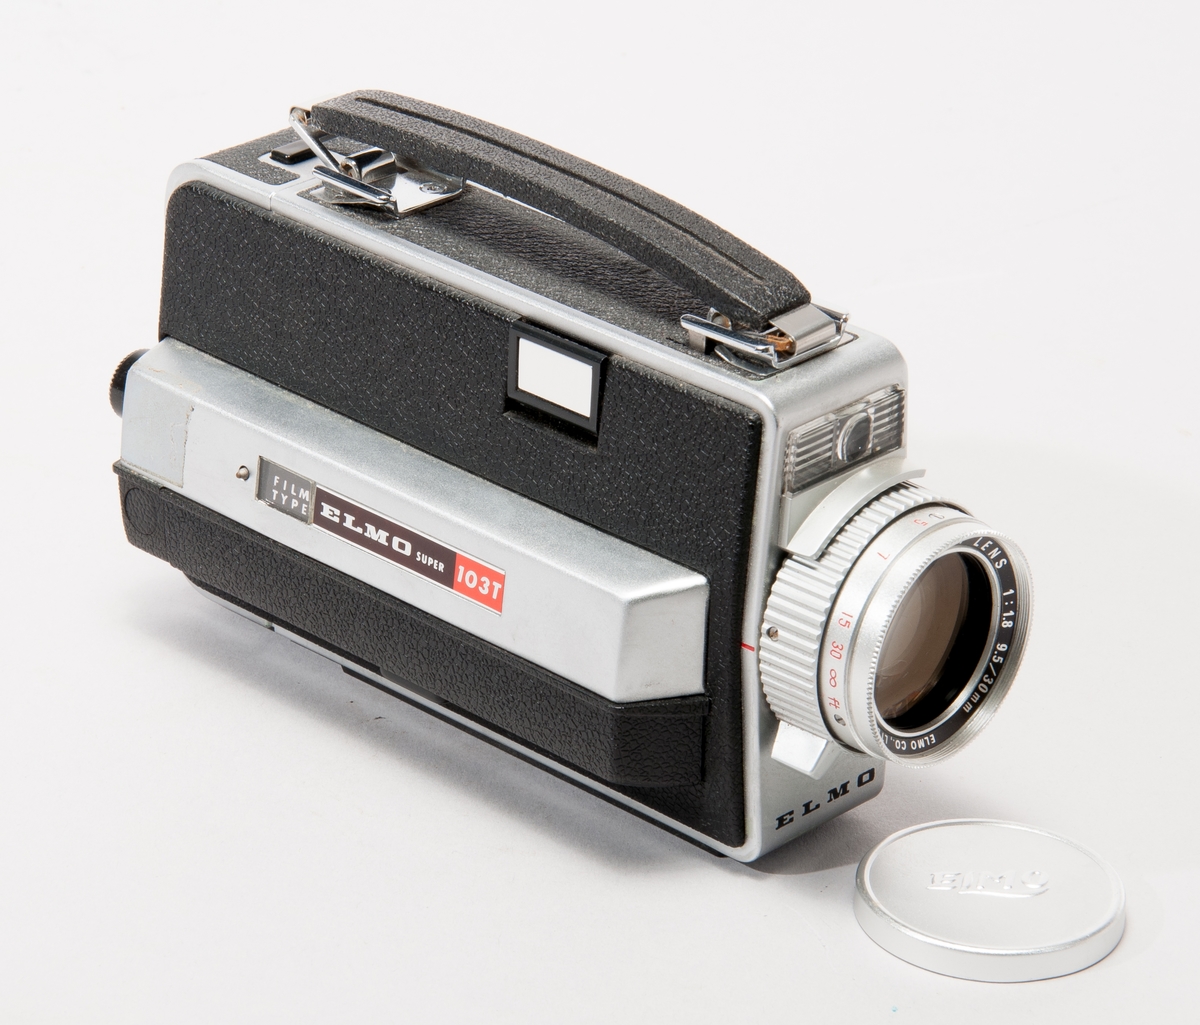 Filmkamera för smalfilm, Elmo typ Super 103T. 
Objektiv Elmo Zoom Lens 1:1,89,5/30 mm, med linslock. En spegel kan fällas ut för funktionen "Superimpose".
Tillverkningsnr. 327614.